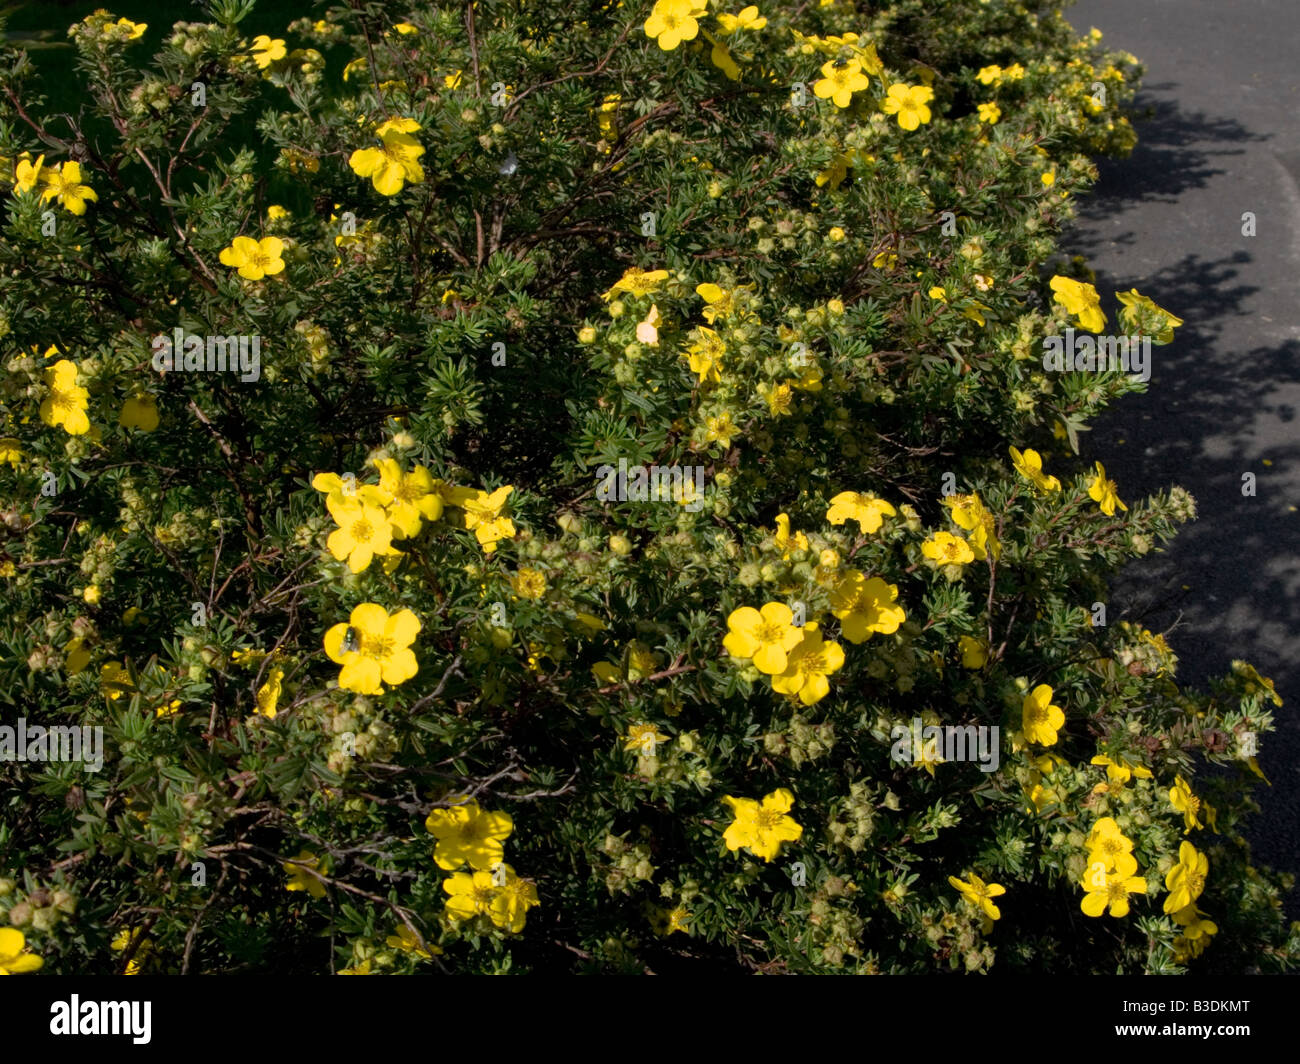 Yellow Potentilla Fruticosa bushes in an English Garden Stock Photo